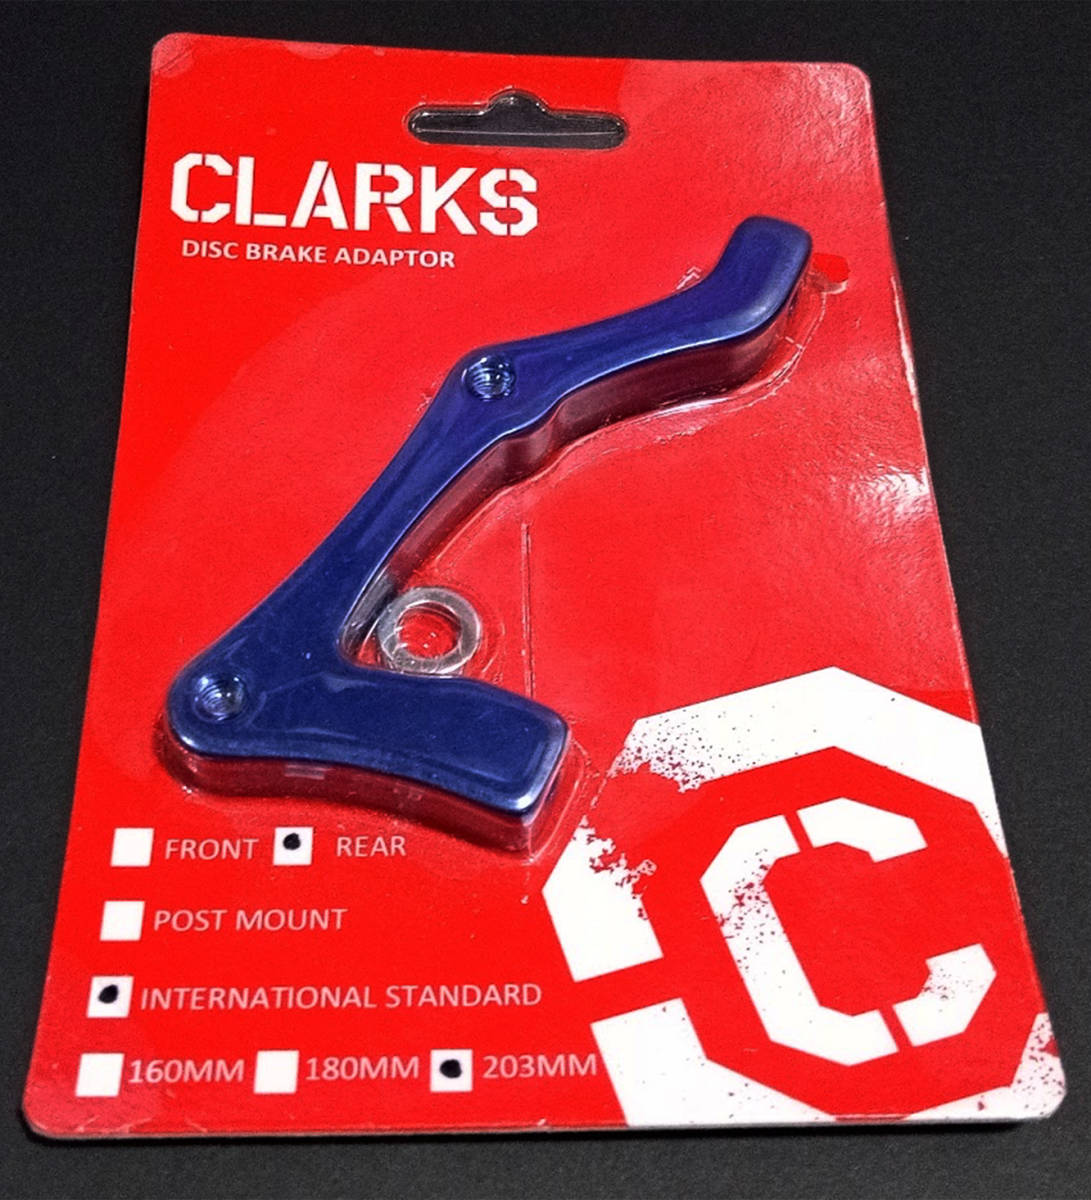 CLARKS DISC BRAKE ADAPTER クラークス ディスク ブレーキ アダプター/リア IS 203mm カラー/ブルーの画像1